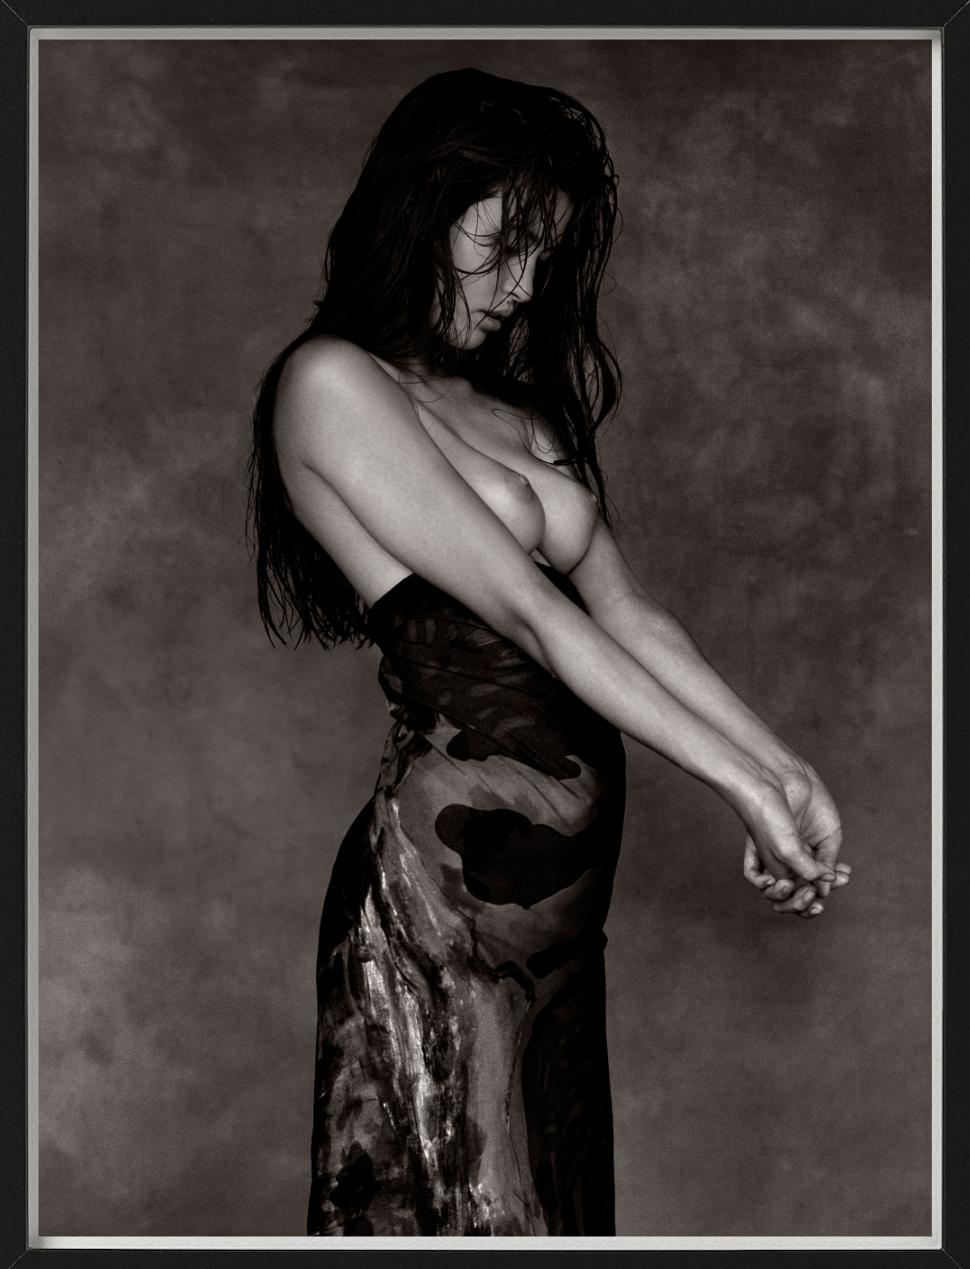 Monica Gripman – halber Akt des Models in einem Rock, Kunstfotografie, 1988 (Schwarz), Nude Photograph, von Albert Watson